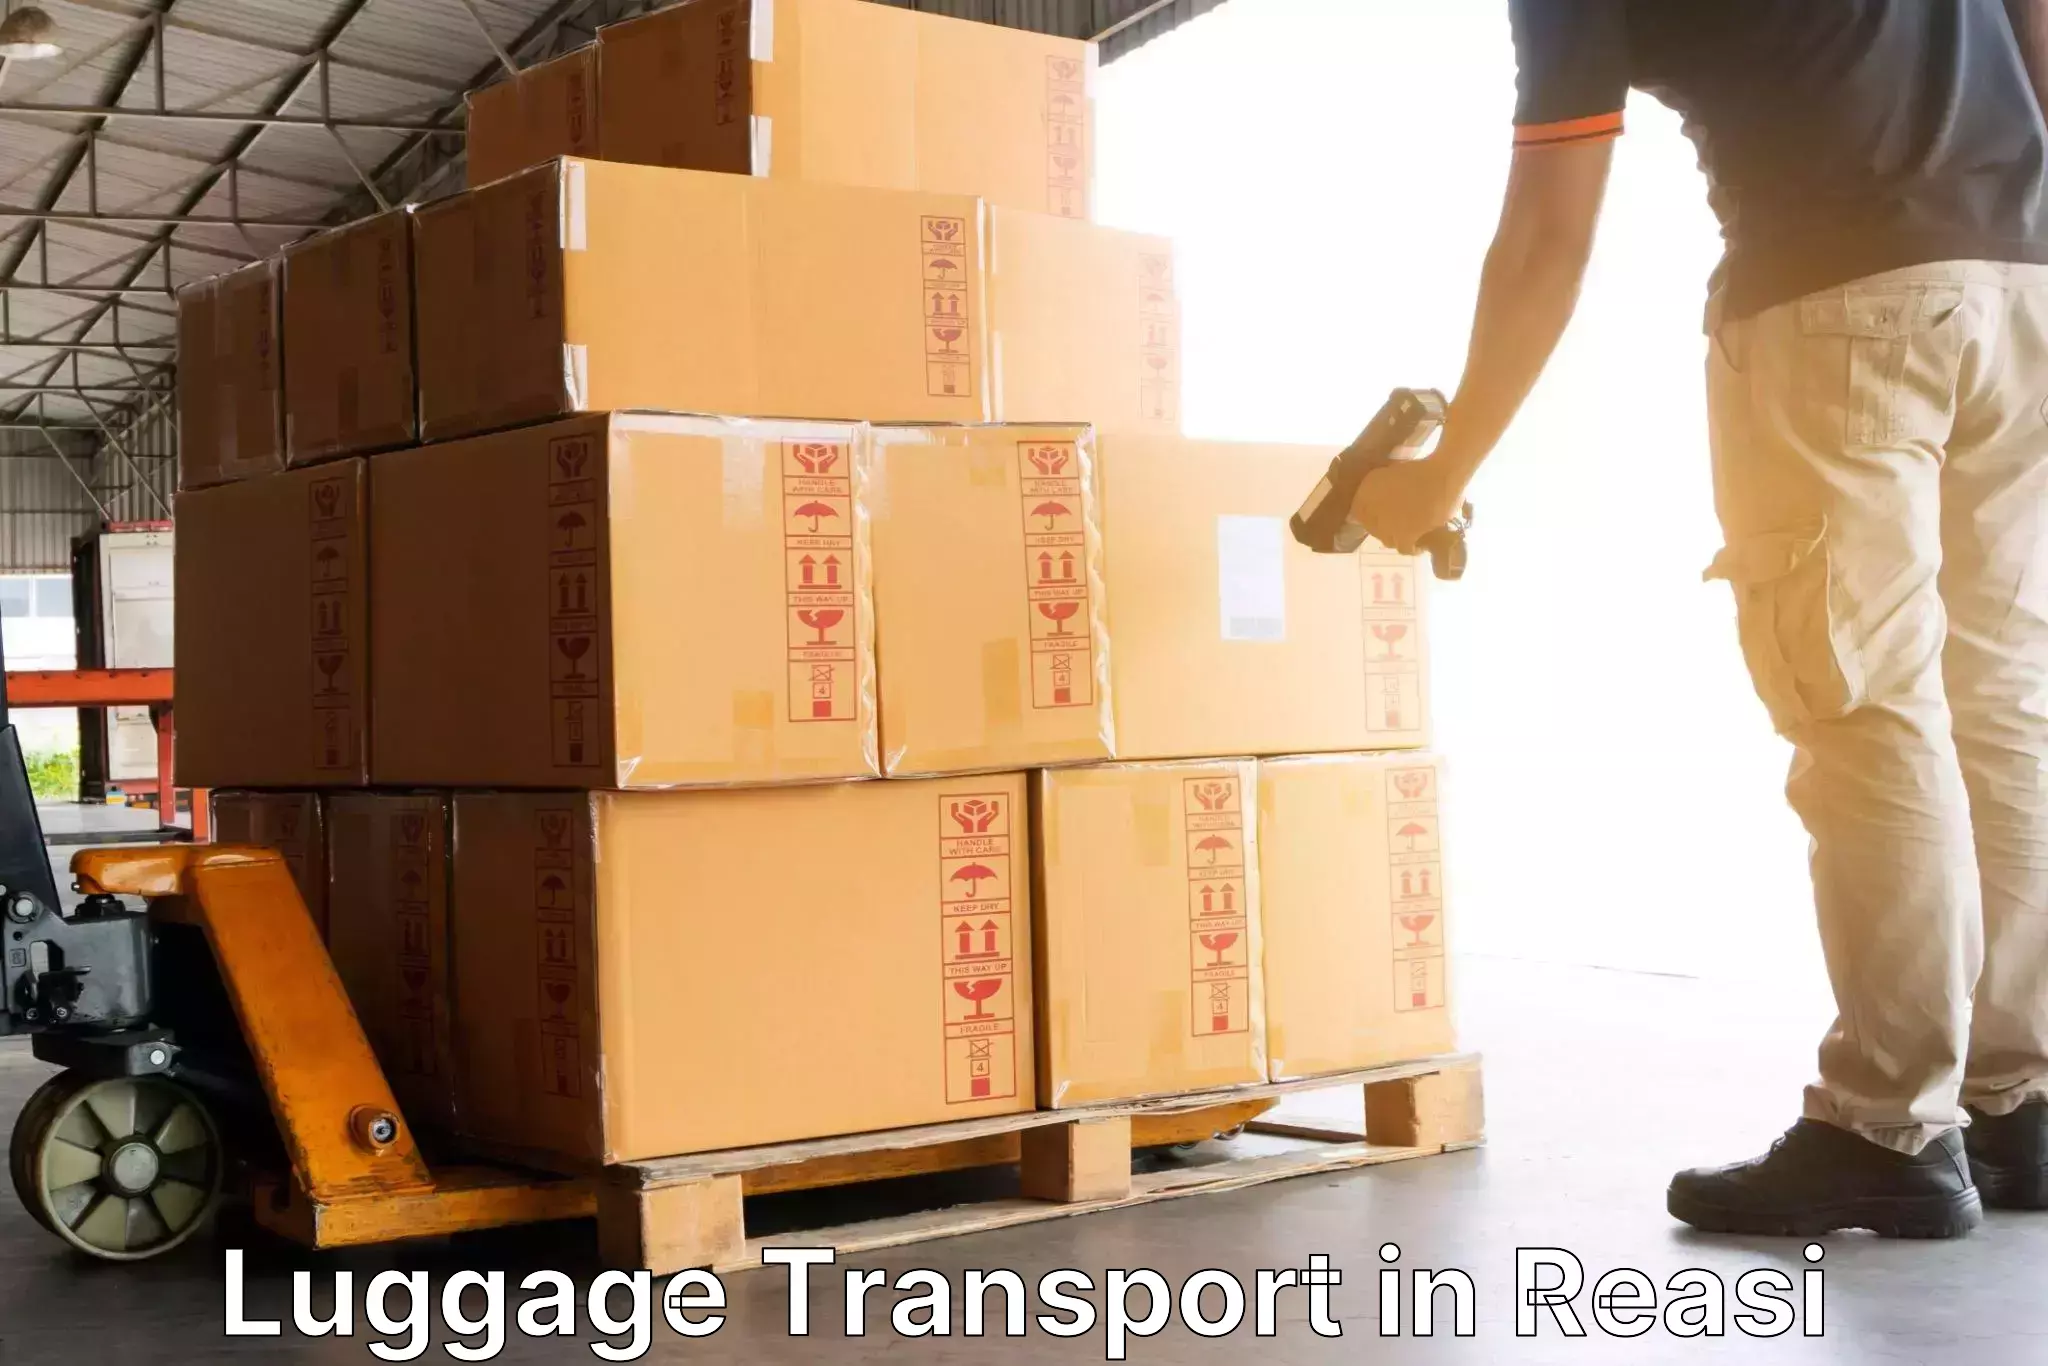 Same day baggage transport in Reasi